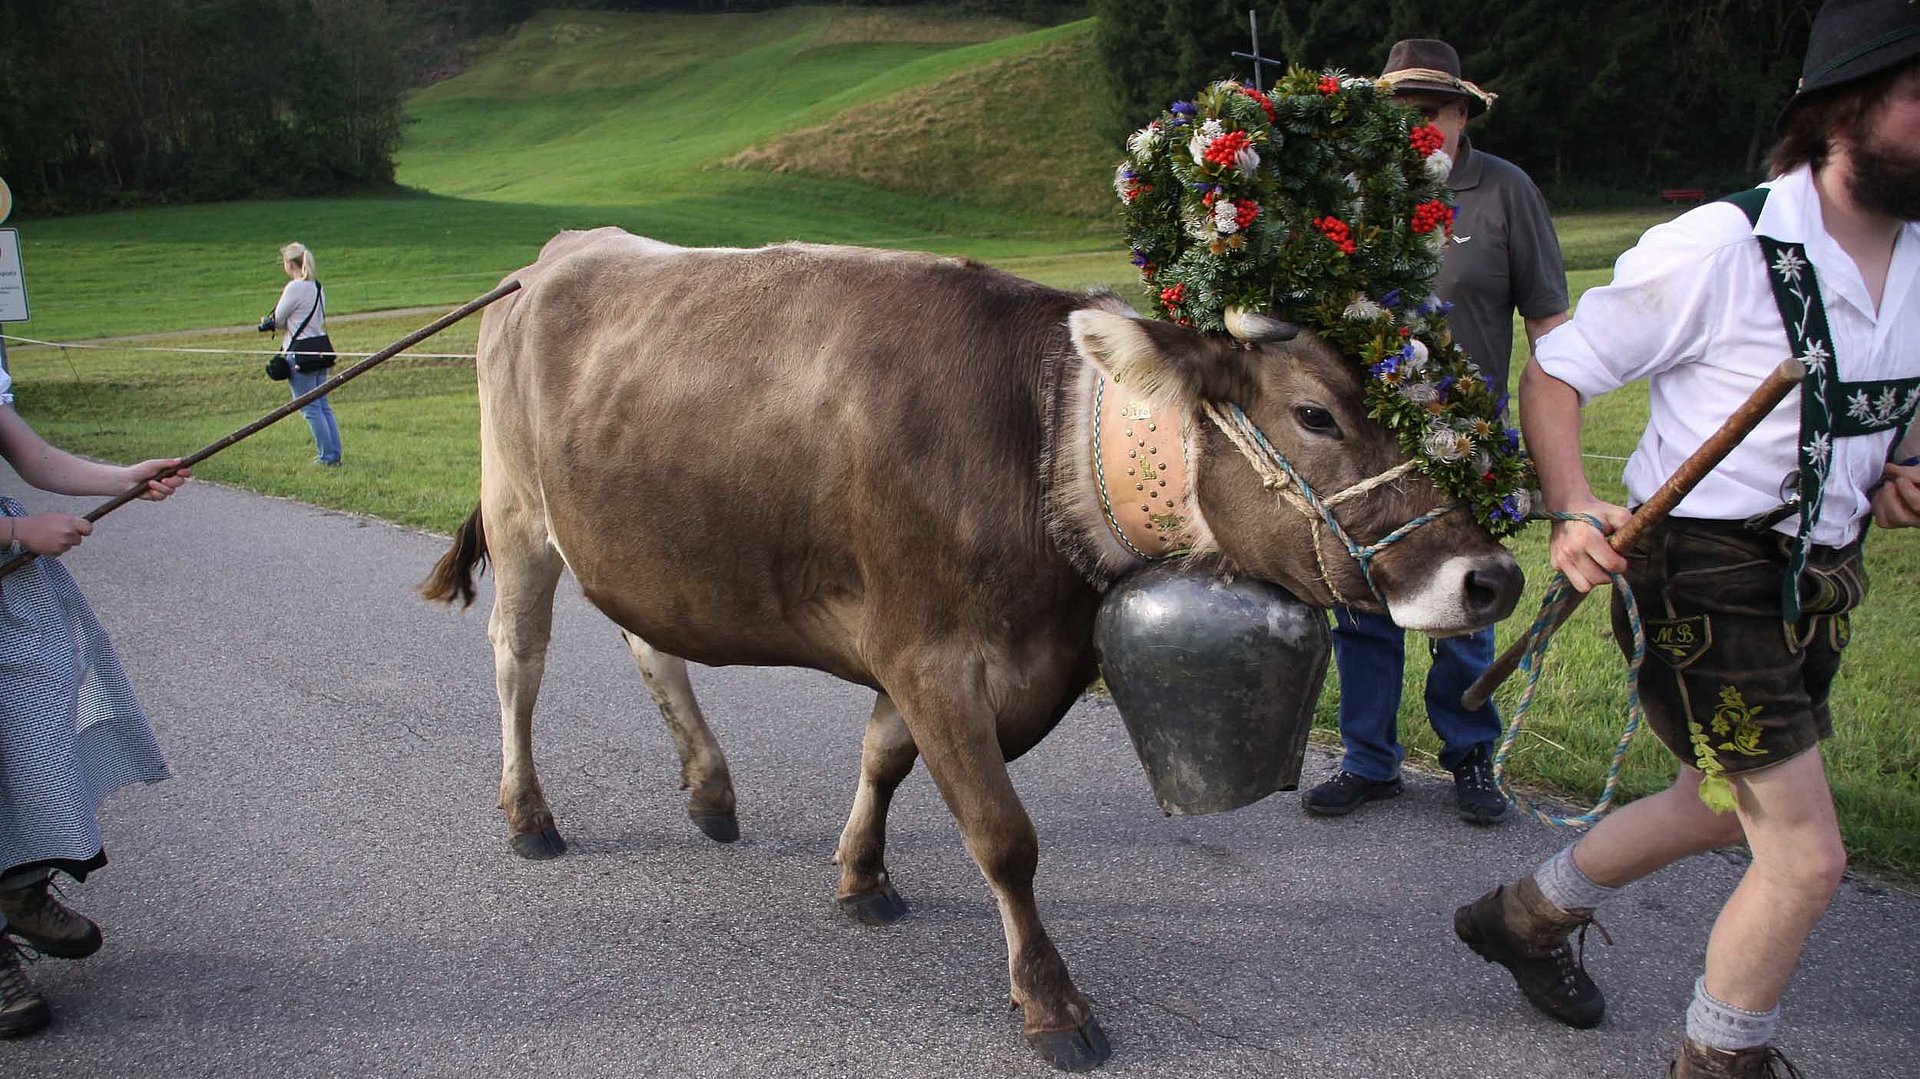 Urlaub auf dem Bauernhof in Franken - Kuh mit Kranz wird auf Weg geführt